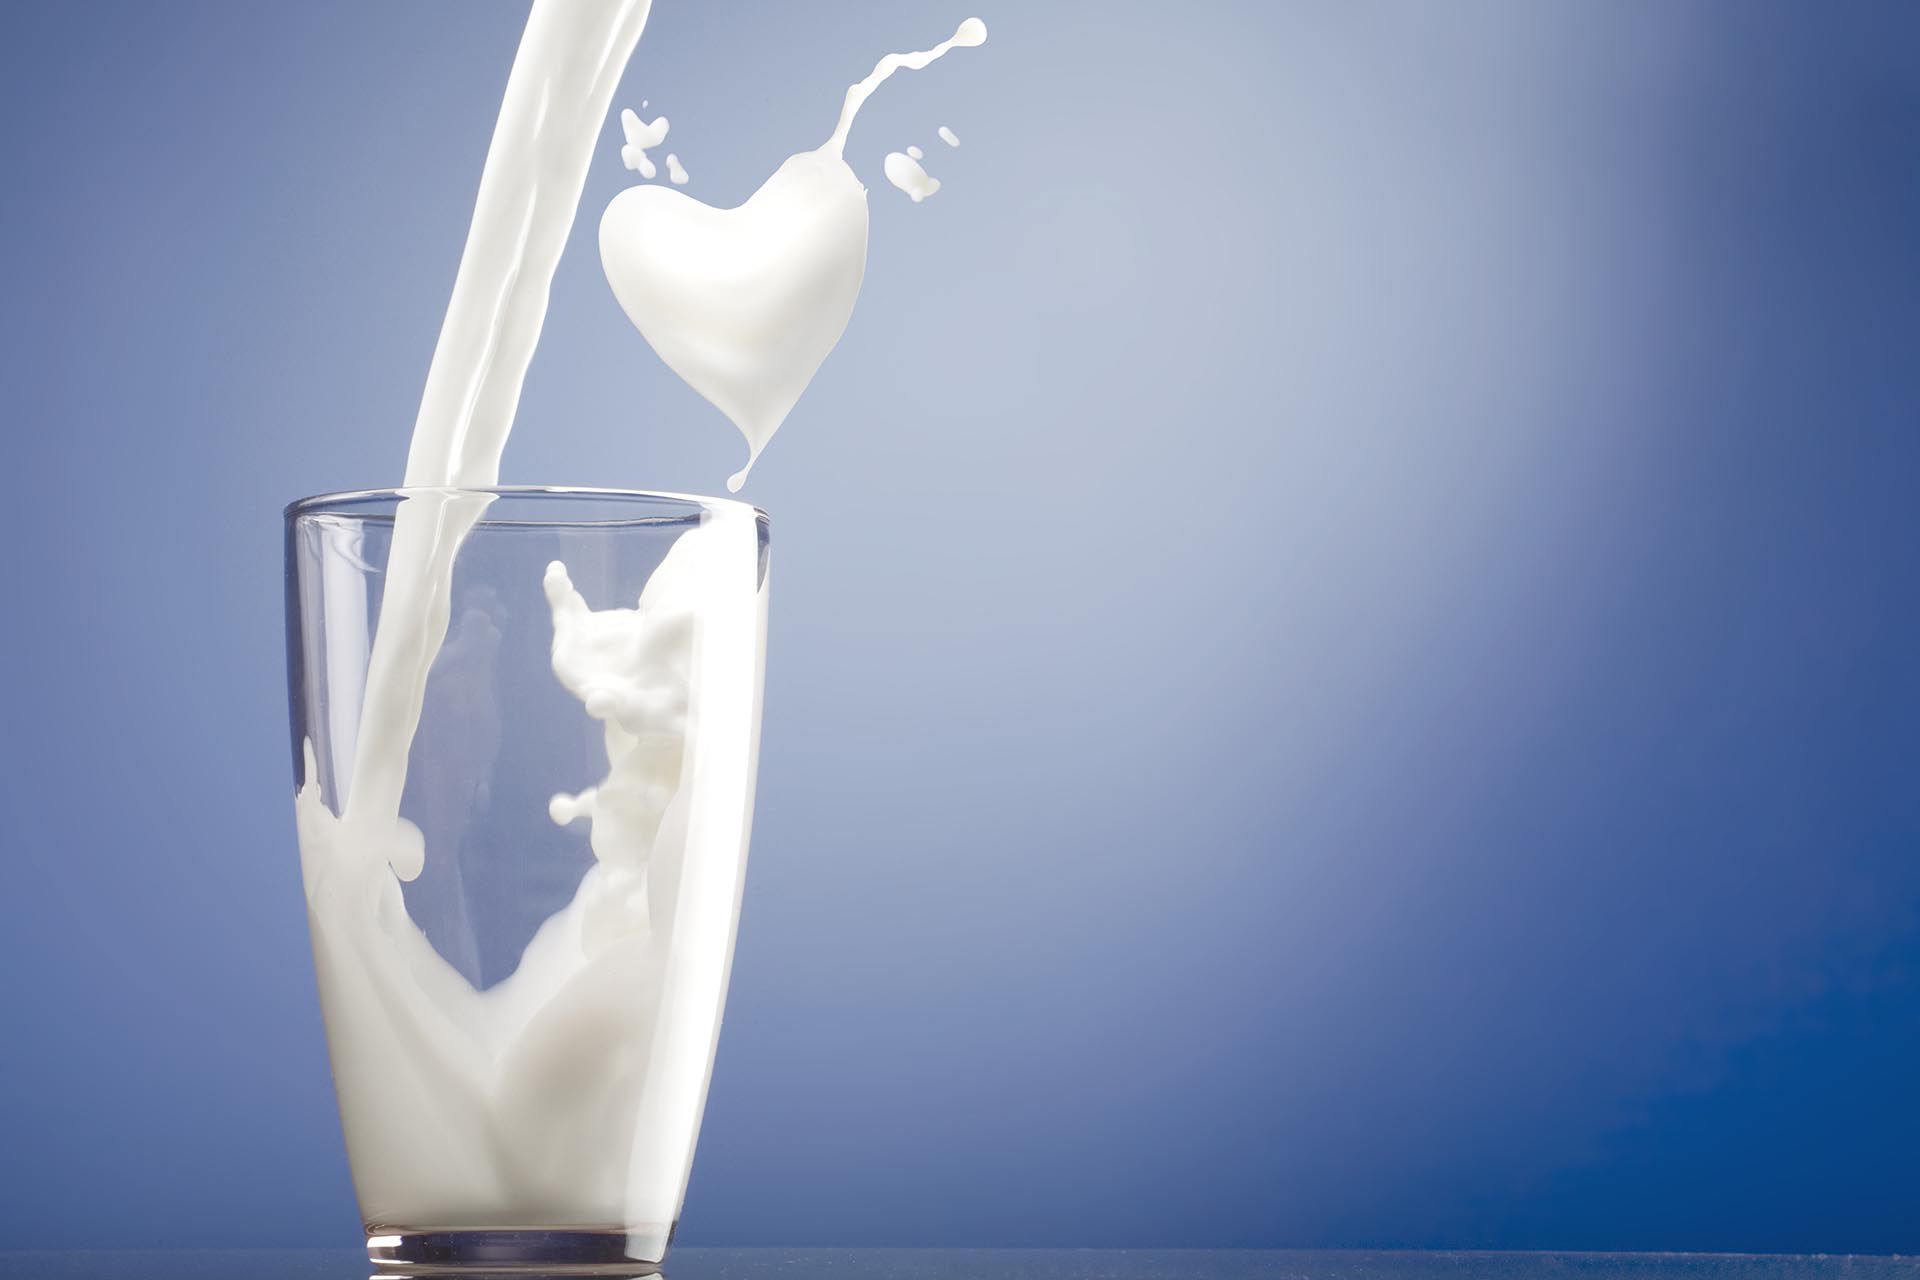 El debate nutricional ahora impactó alrededor del consumo de este alimento esencial en la dieta de 6 mil millones de personas alrededor del globo: la leche de vaca. Hoy es el Día Mundial de la Leche, por disposición de la FAO, y vale la pena analizar por qué en la última década, descendió el consumo en todo el mundo.